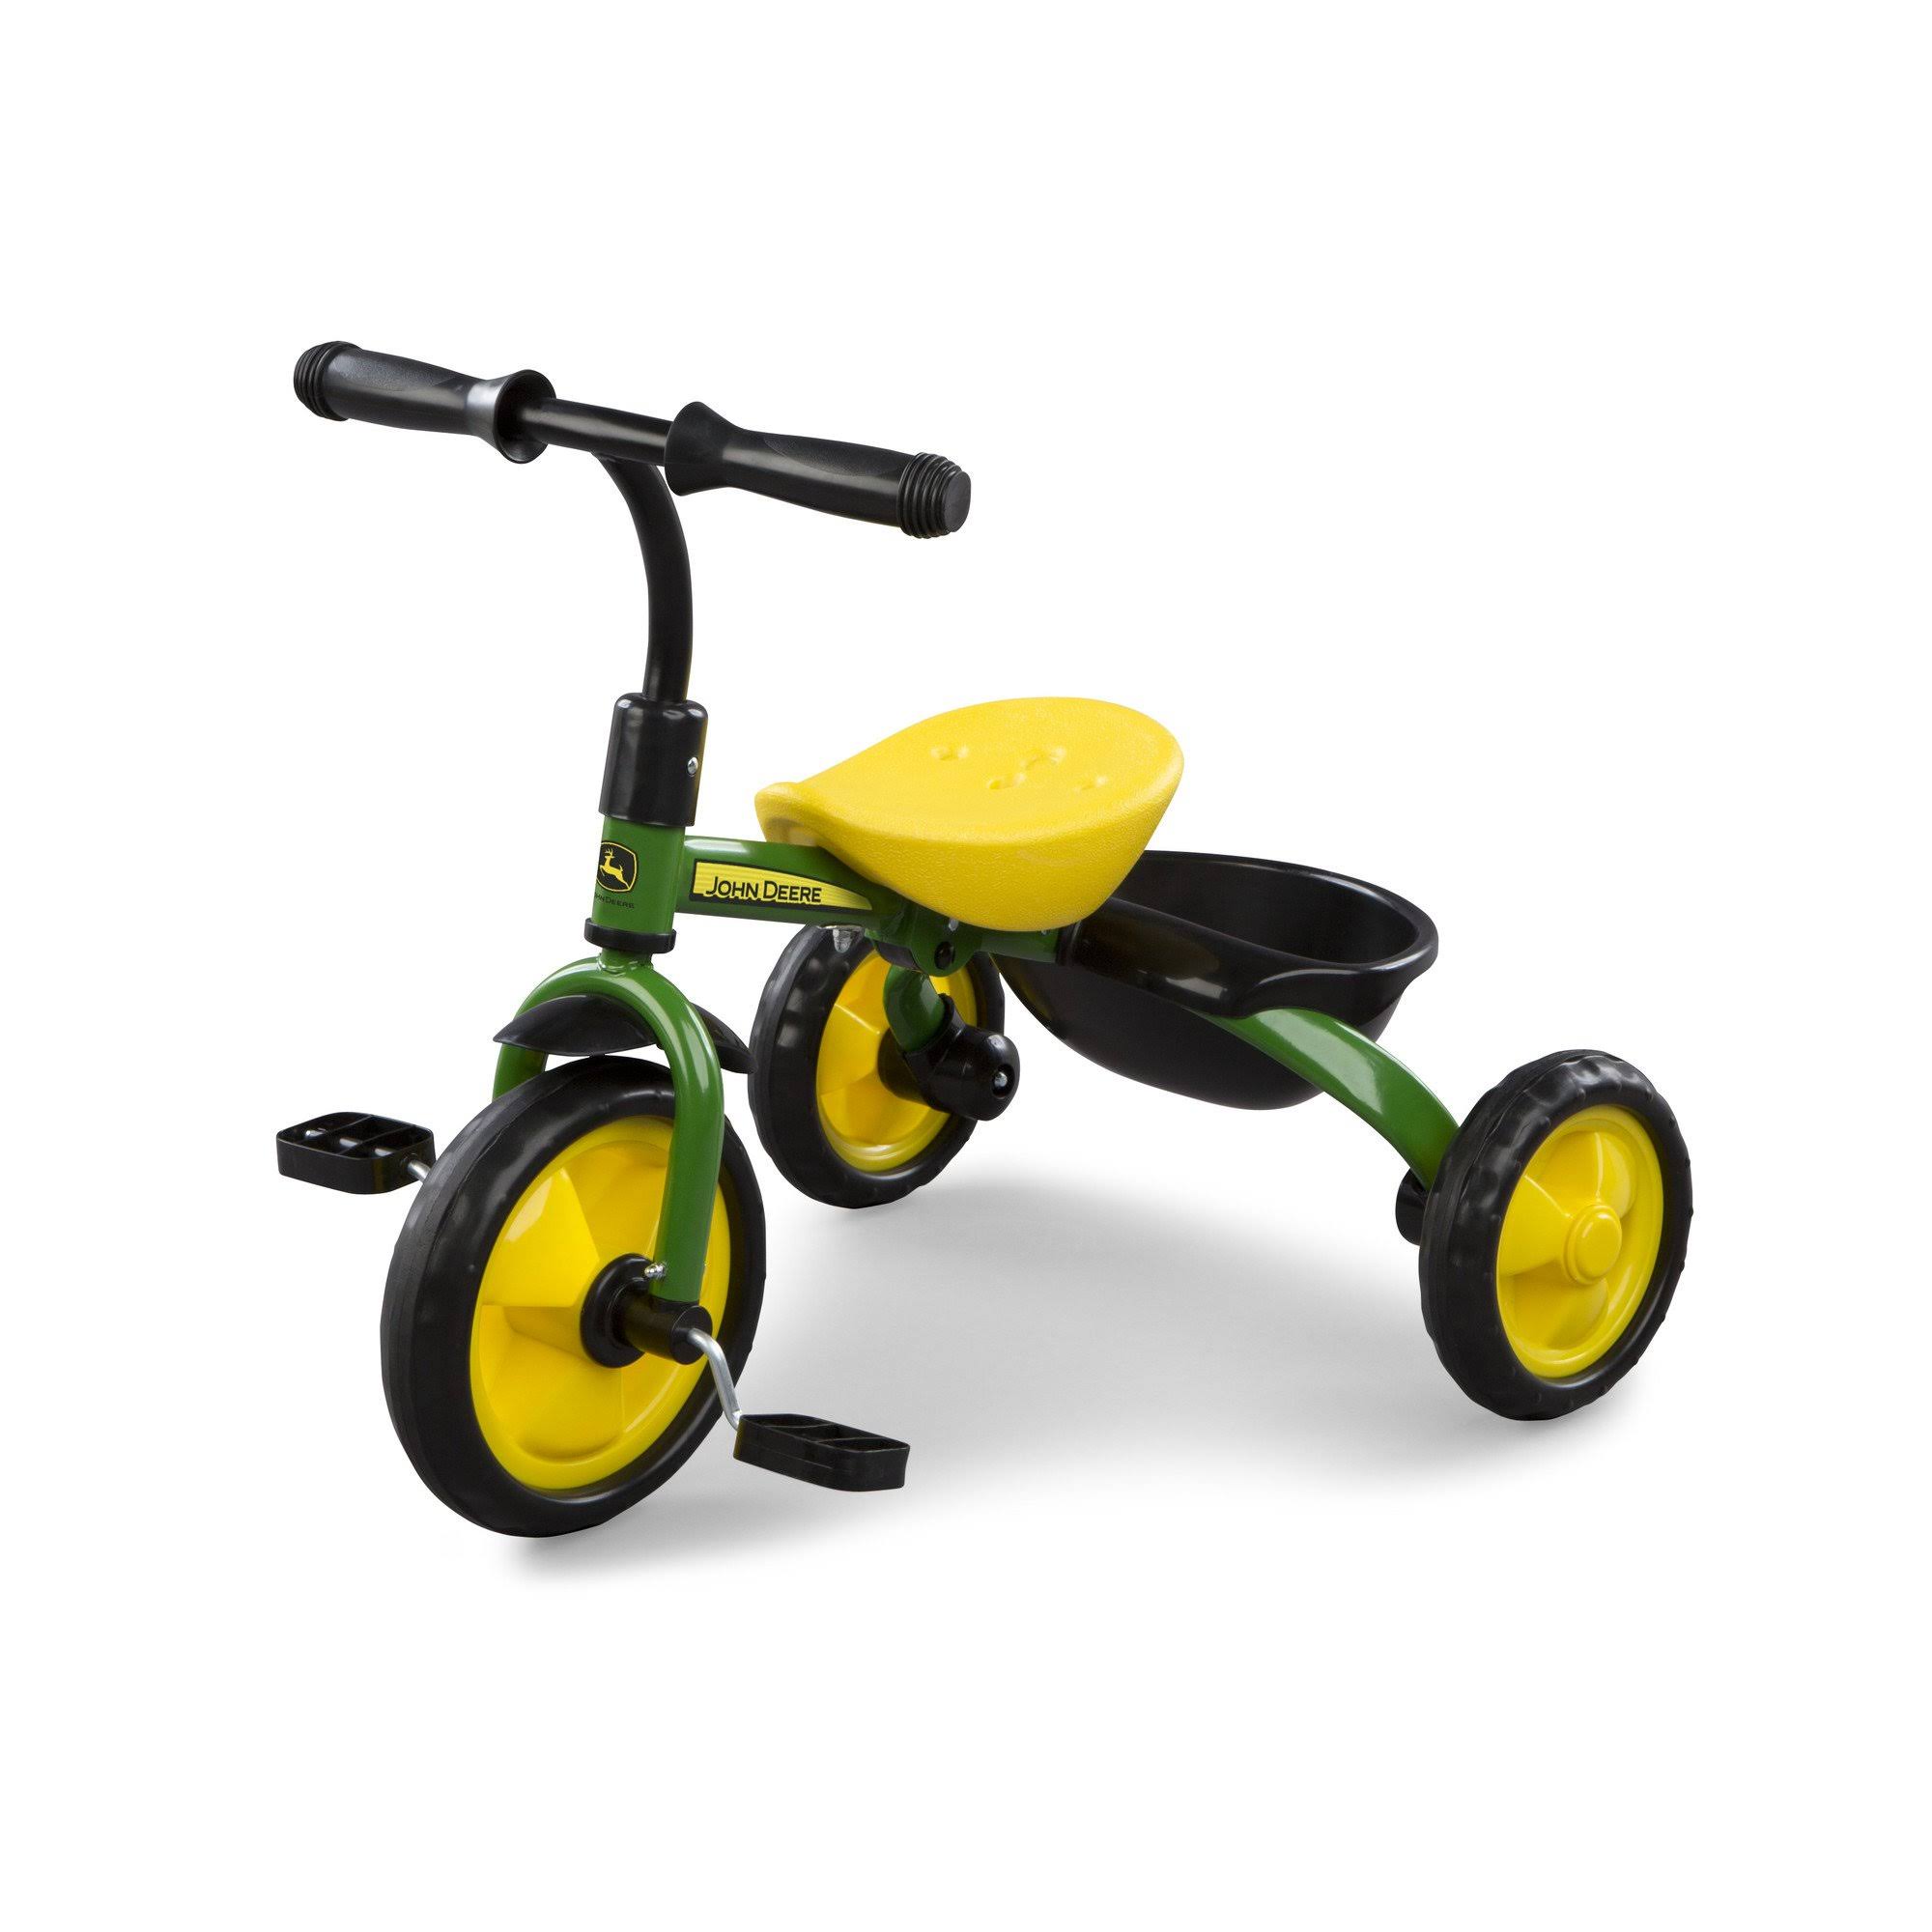 Tomy John Deere Steel Tricycle Toy - Green